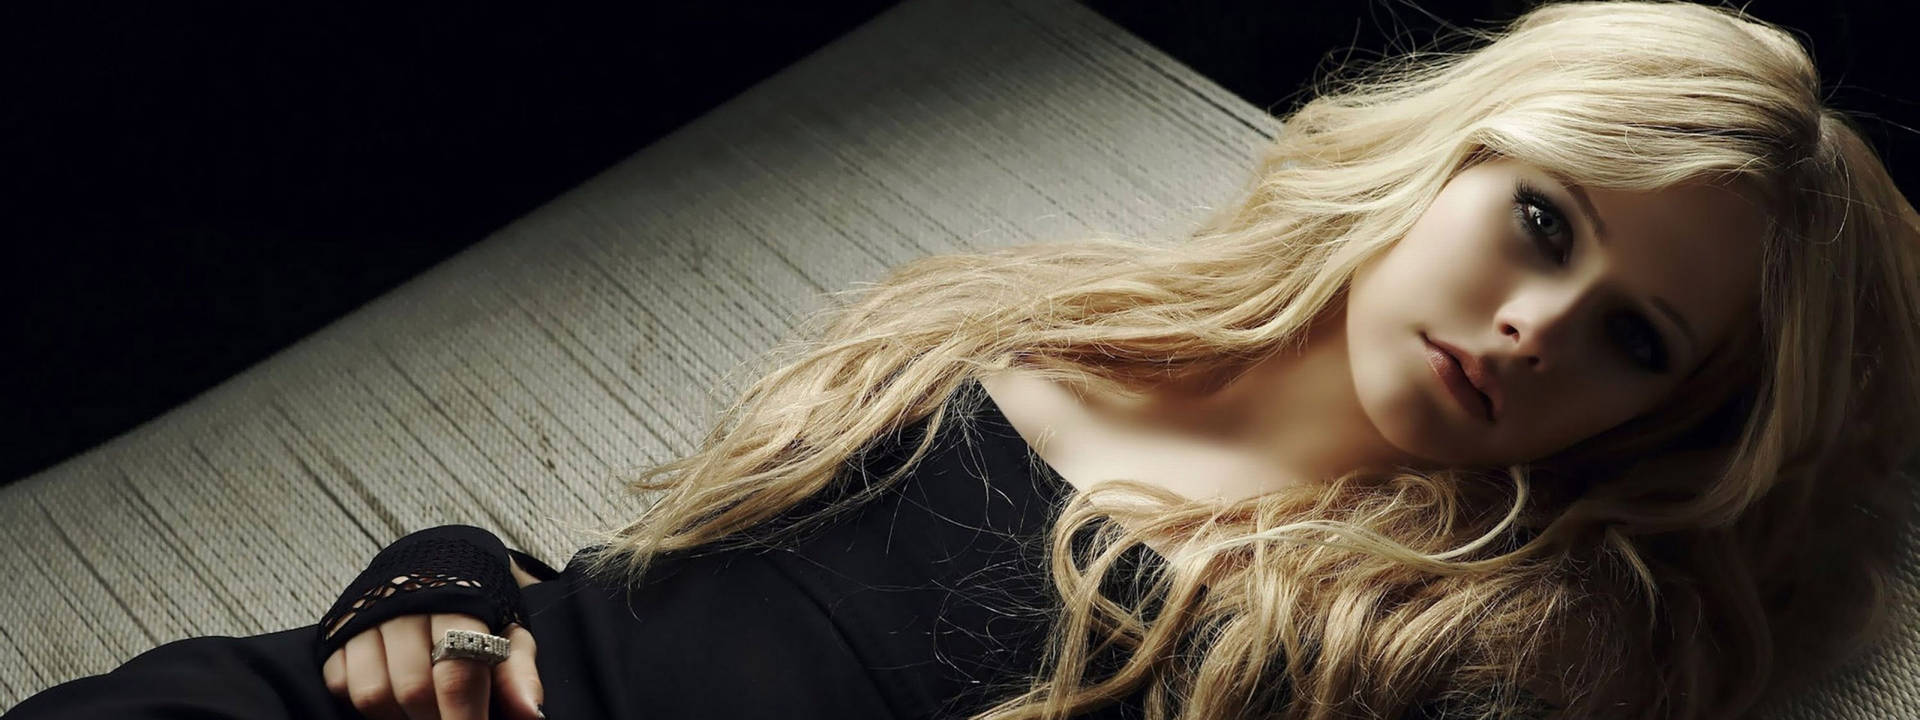 Schöneblonde Avril Lavigne. Wallpaper